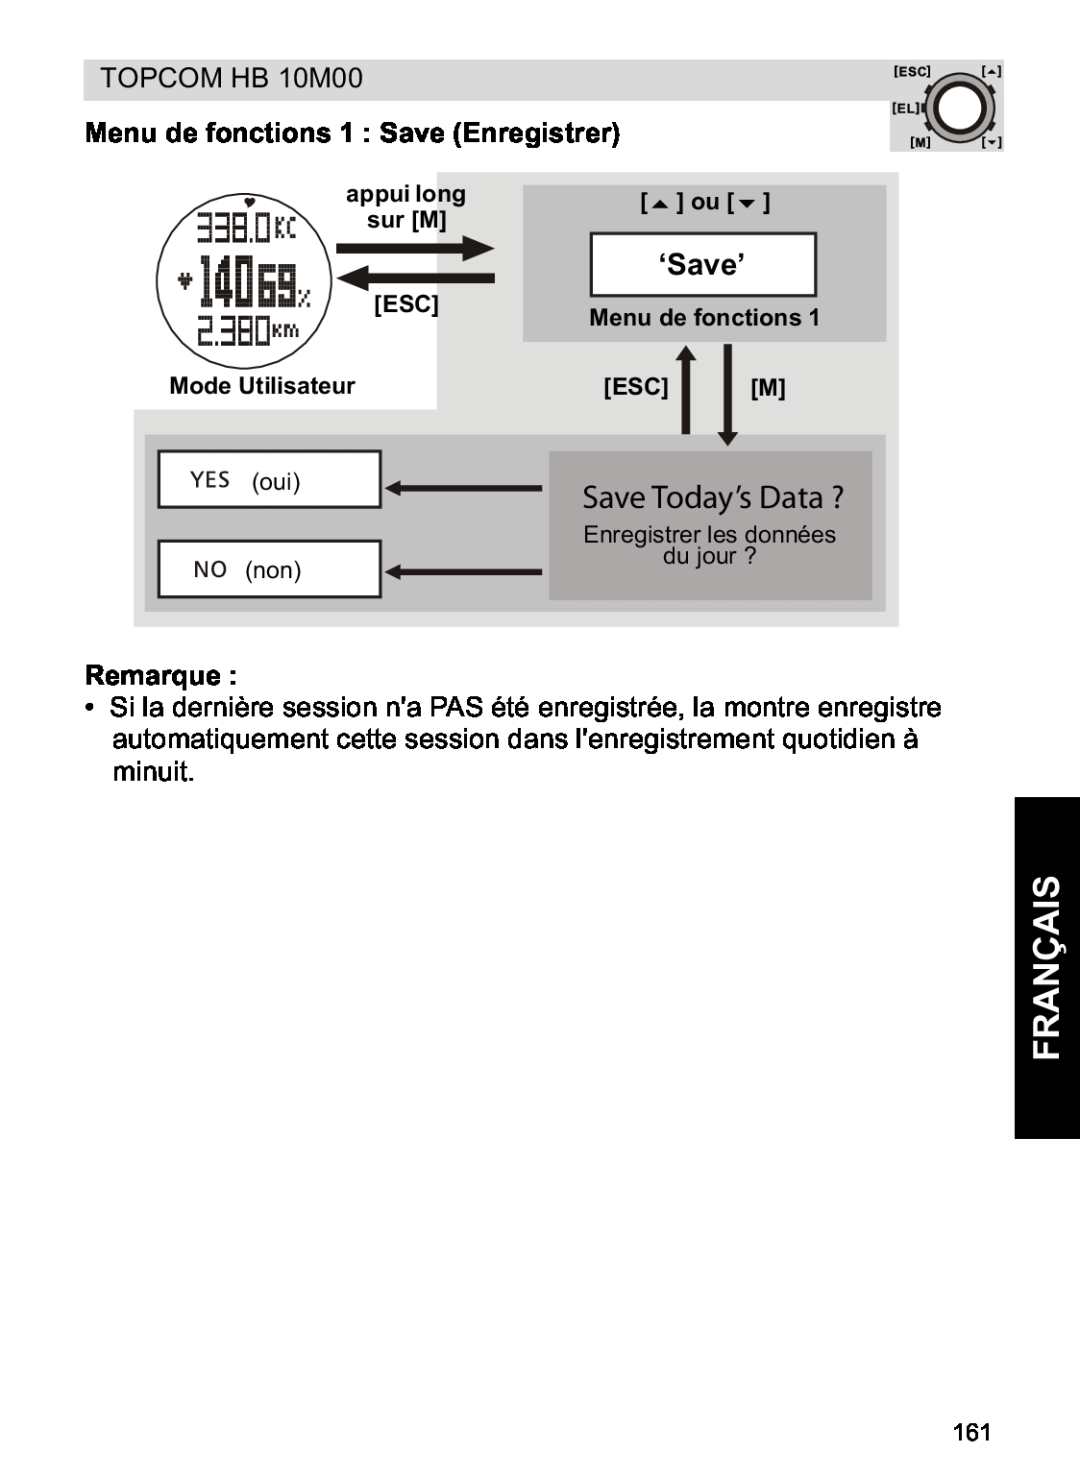 Topcom HB 10M00 manual Français, Save Today’s Data ?, Menu de fonctions 1 Save Enregistrer, ‘Save’, Remarque 